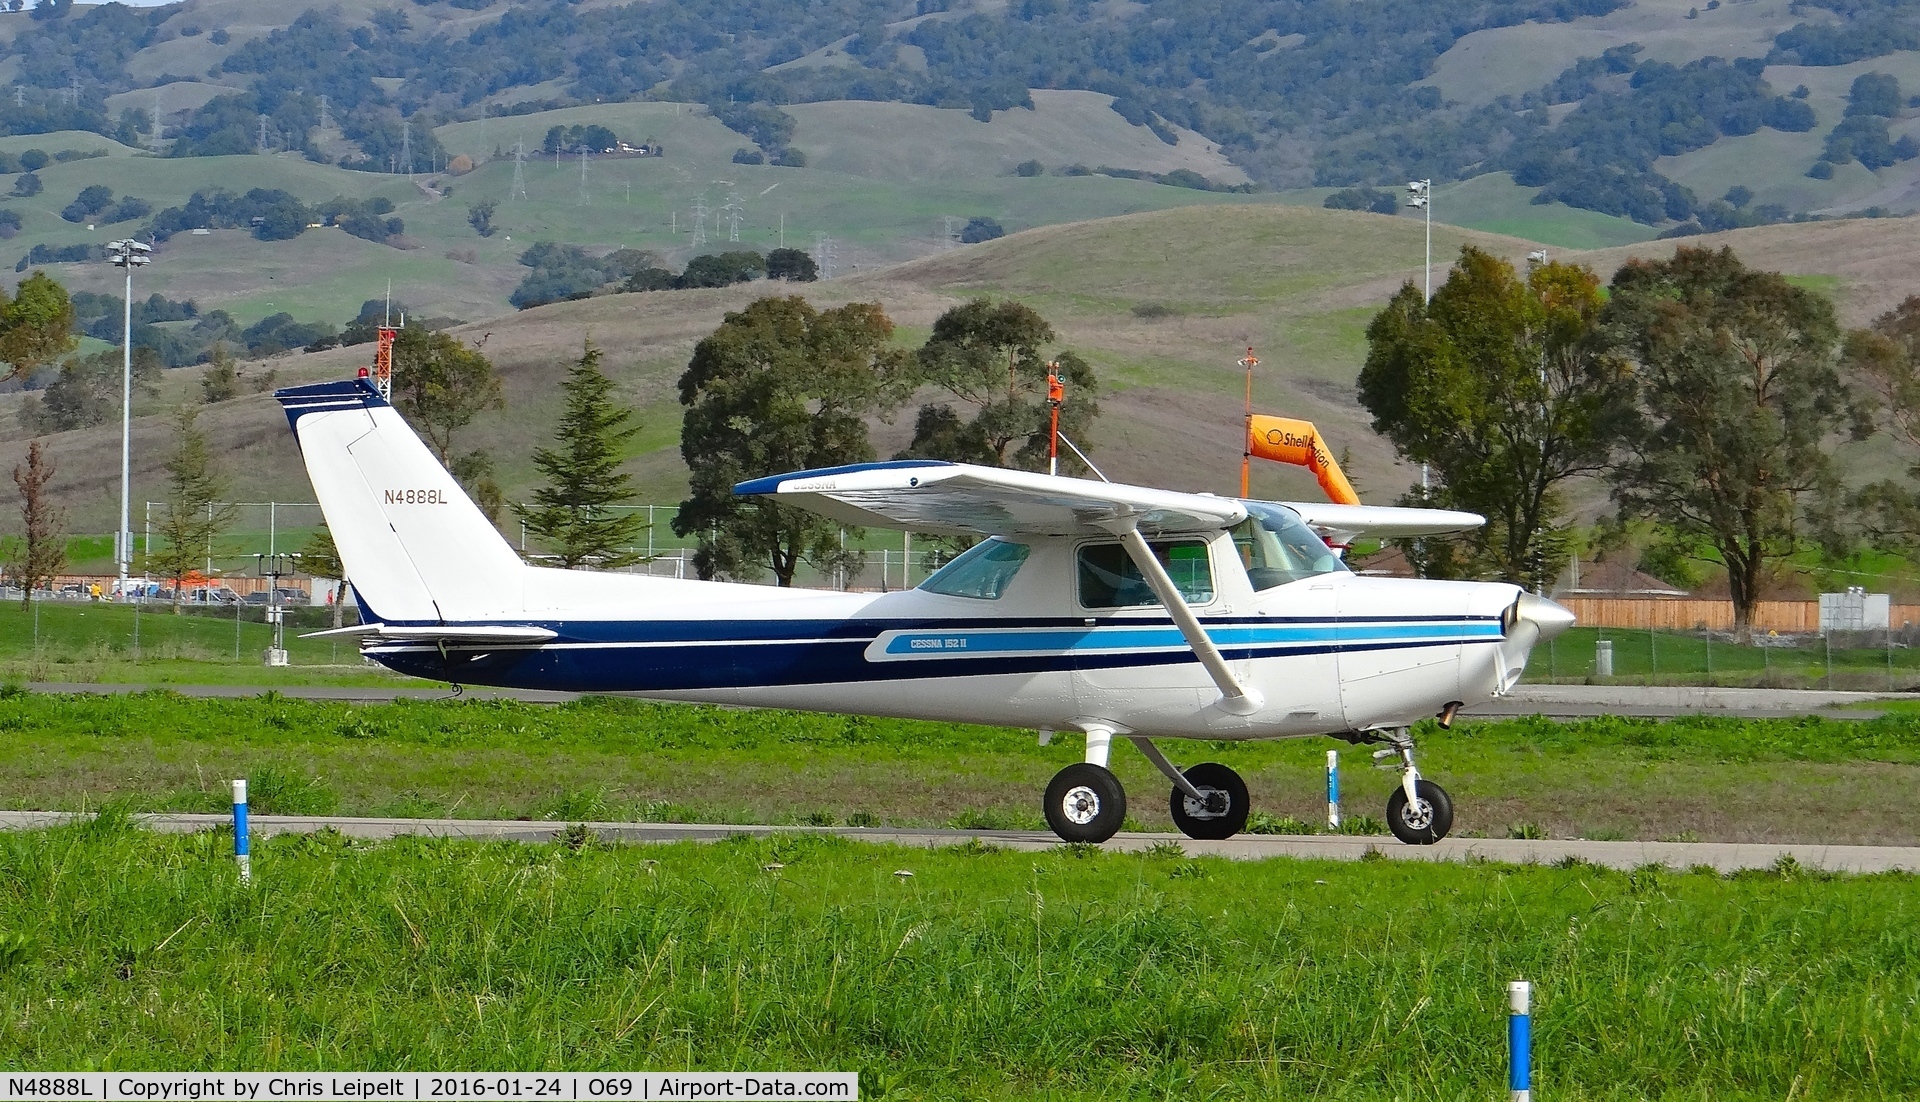 N4888L, 1980 Cessna 152 C/N 15284239, Locally-based 1980 Cessna 152 taxing out for departure at Petaluma Municipal Airport, Petaluma, CA.